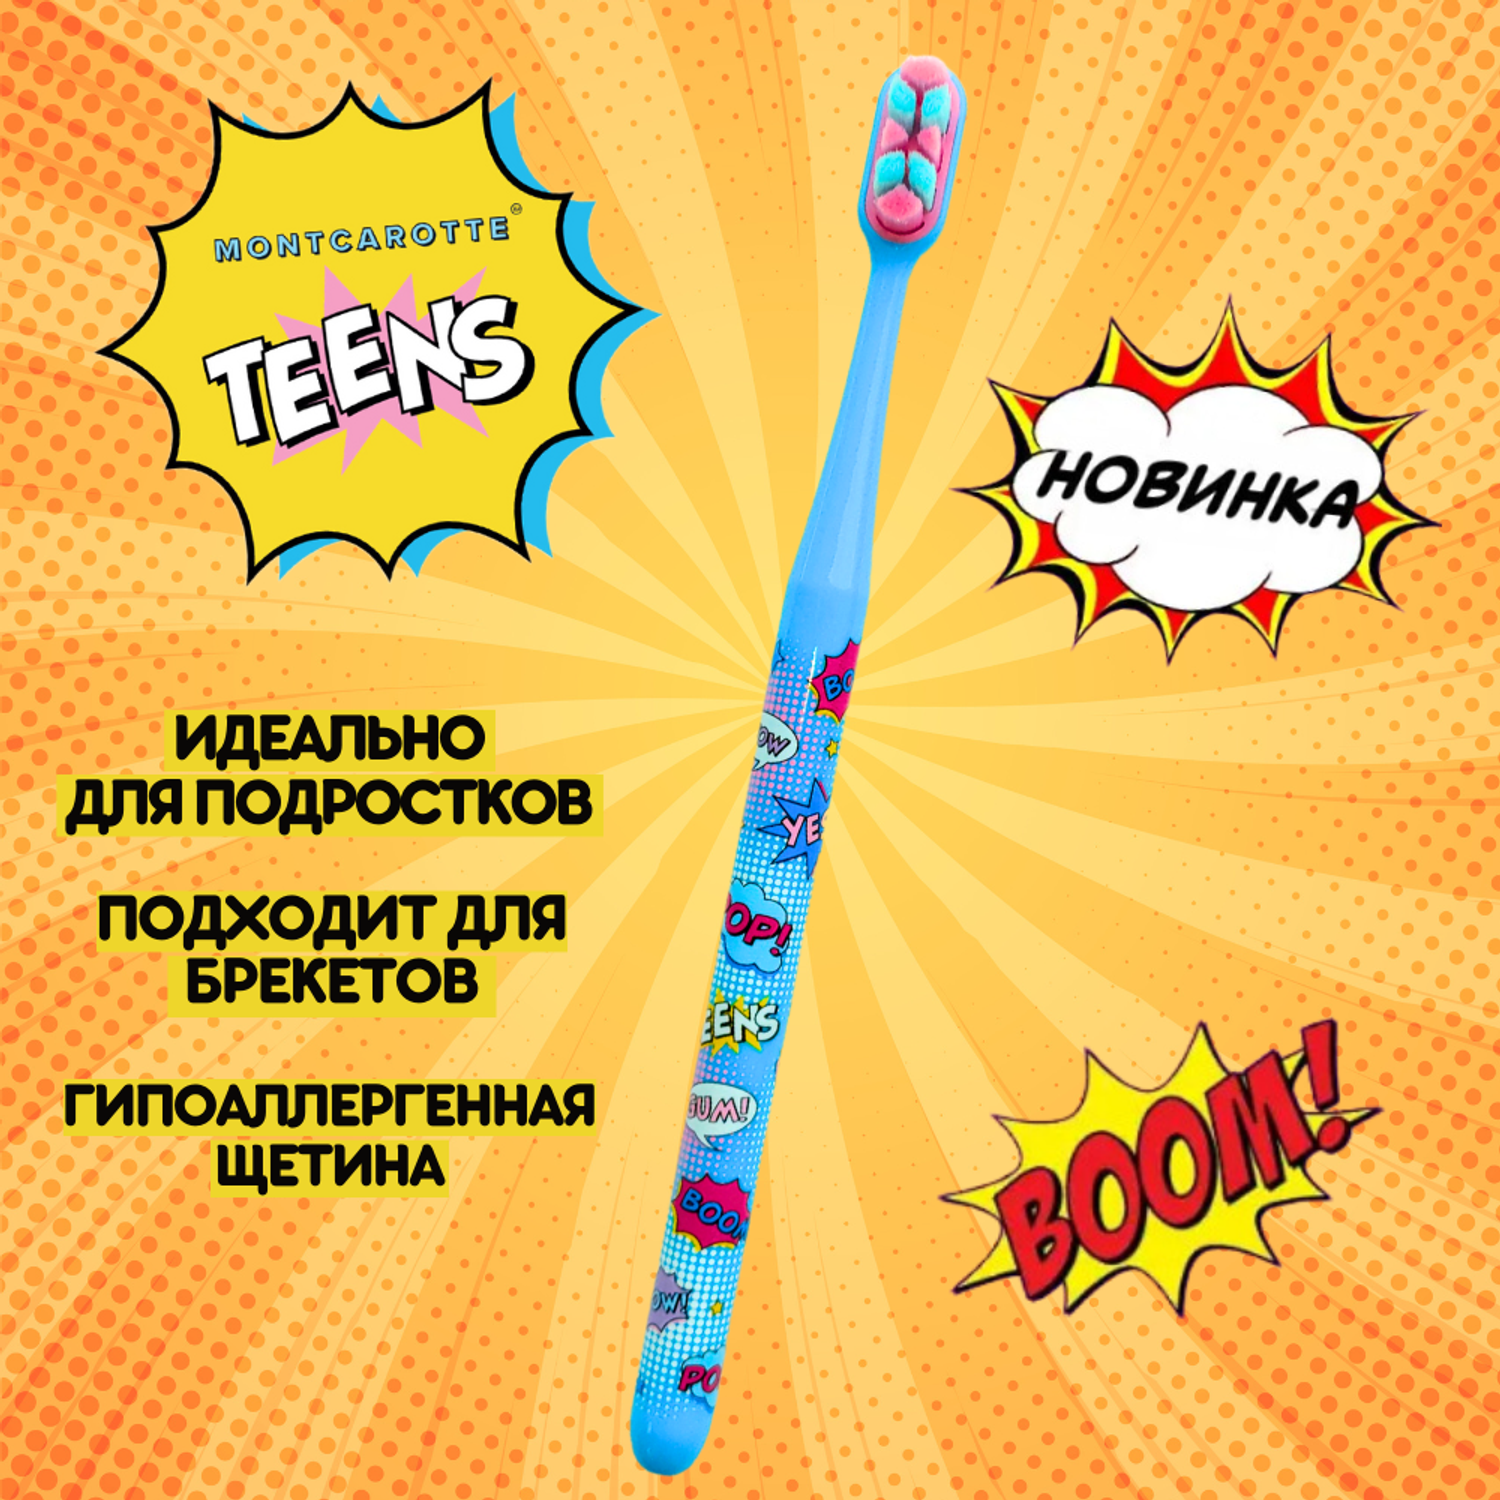 Зубная щетка Montcarotte TEENS для детей и взрослых 7+ голубая Южная Корея - фото 1